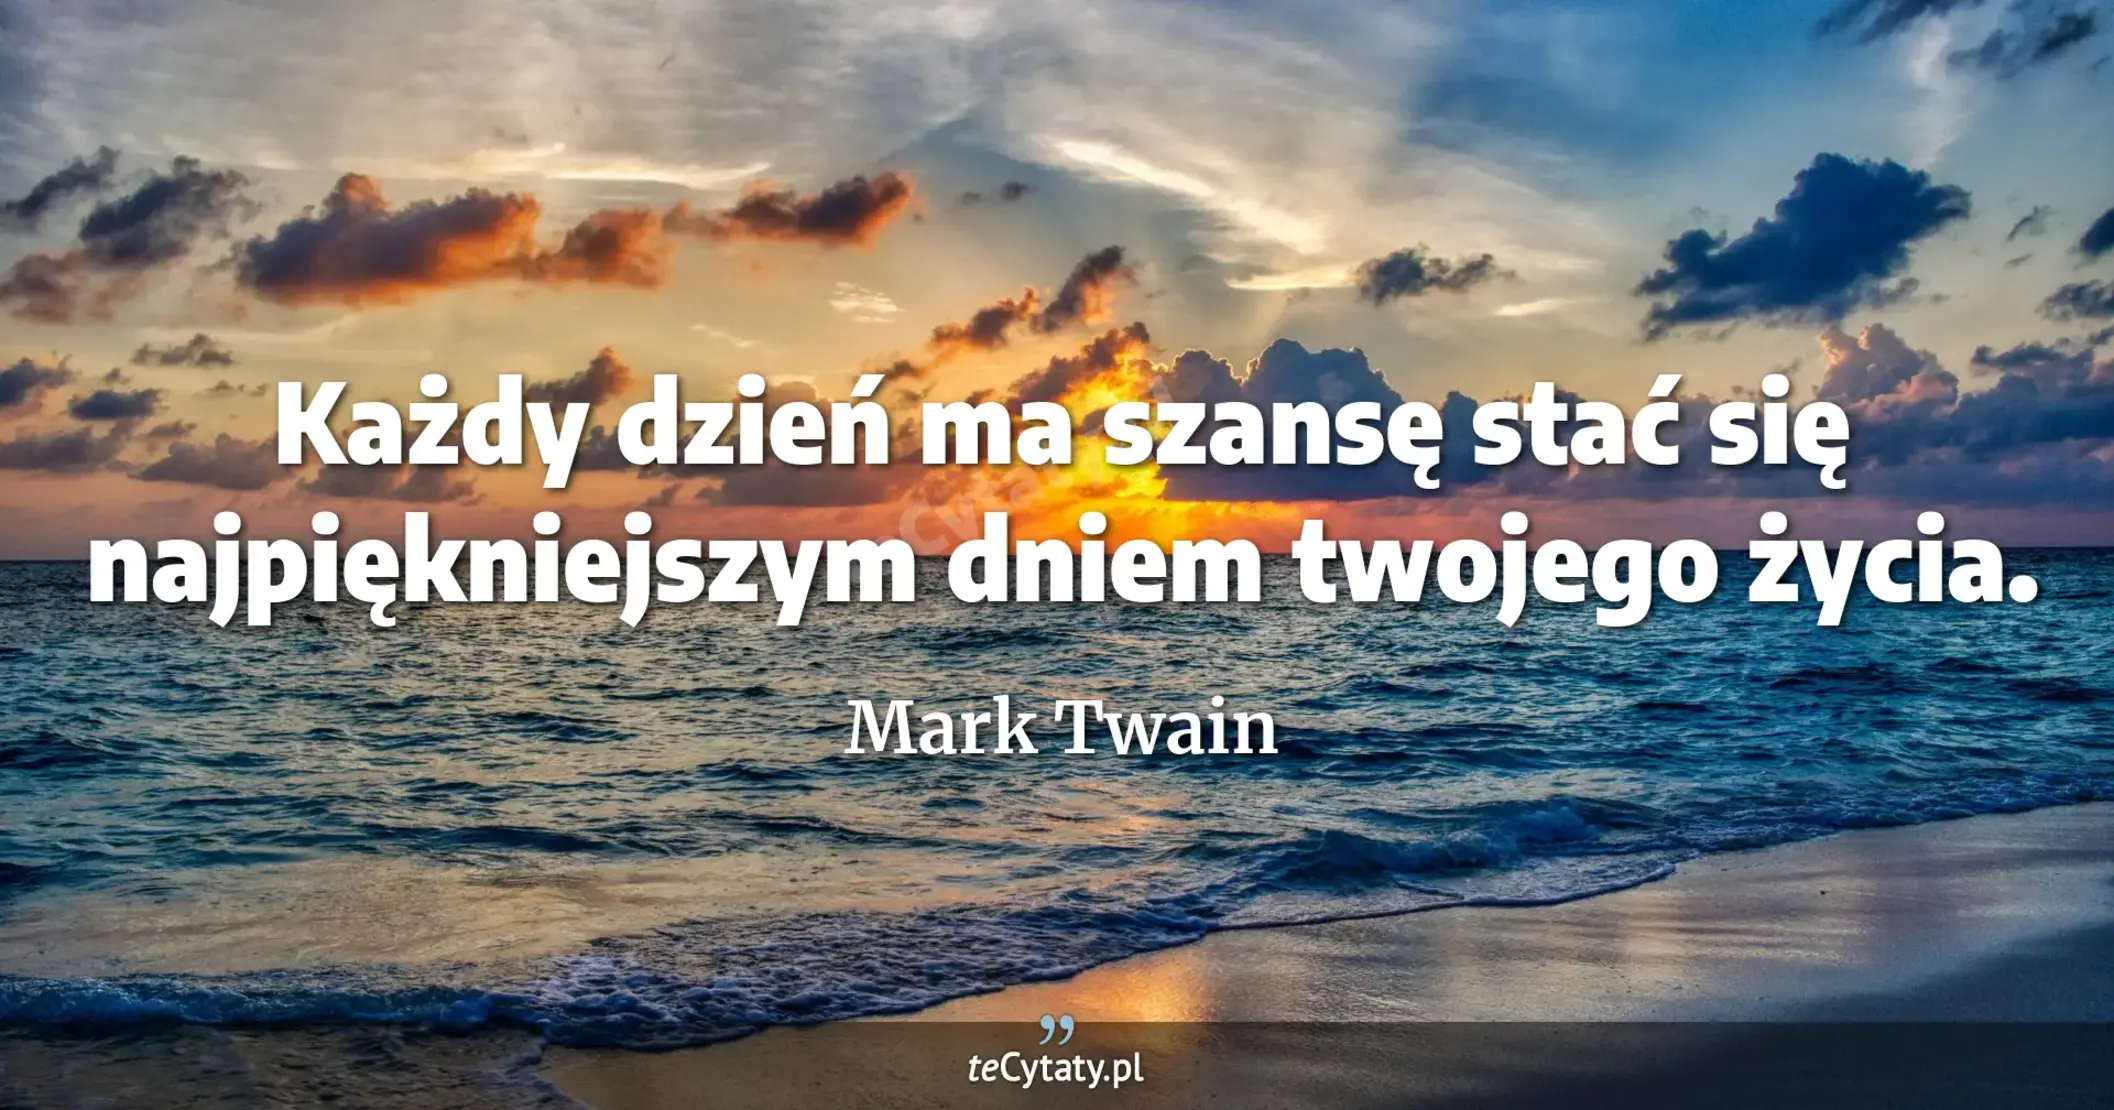 Każdy dzień ma szansę stać się najpiękniejszym dniem twojego życia. - Mark Twain